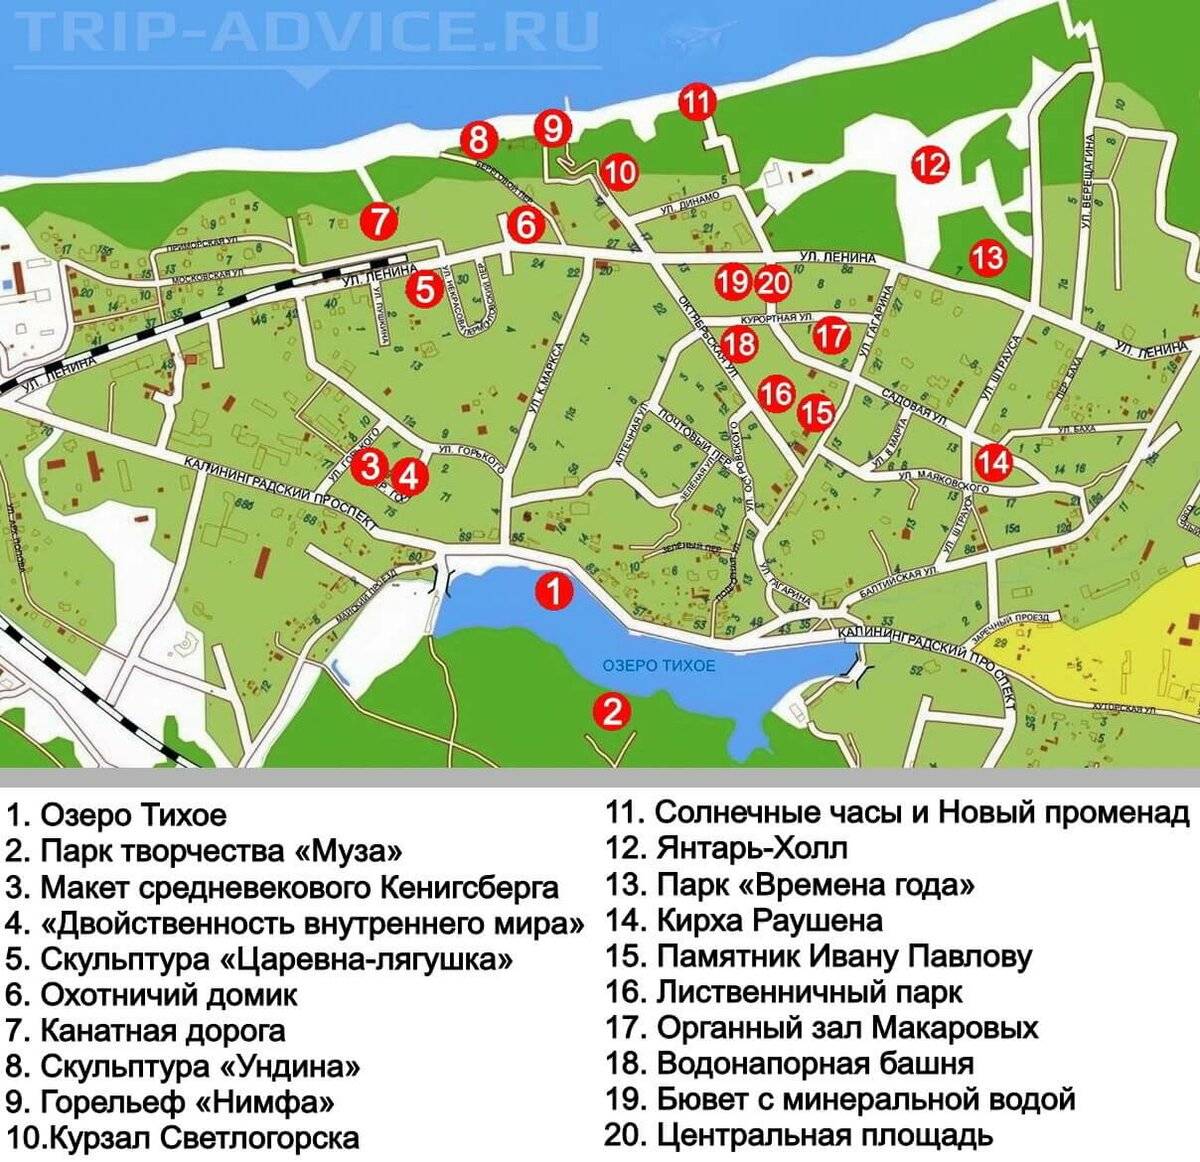 Светлогорск Калининградской области: достопримечательности